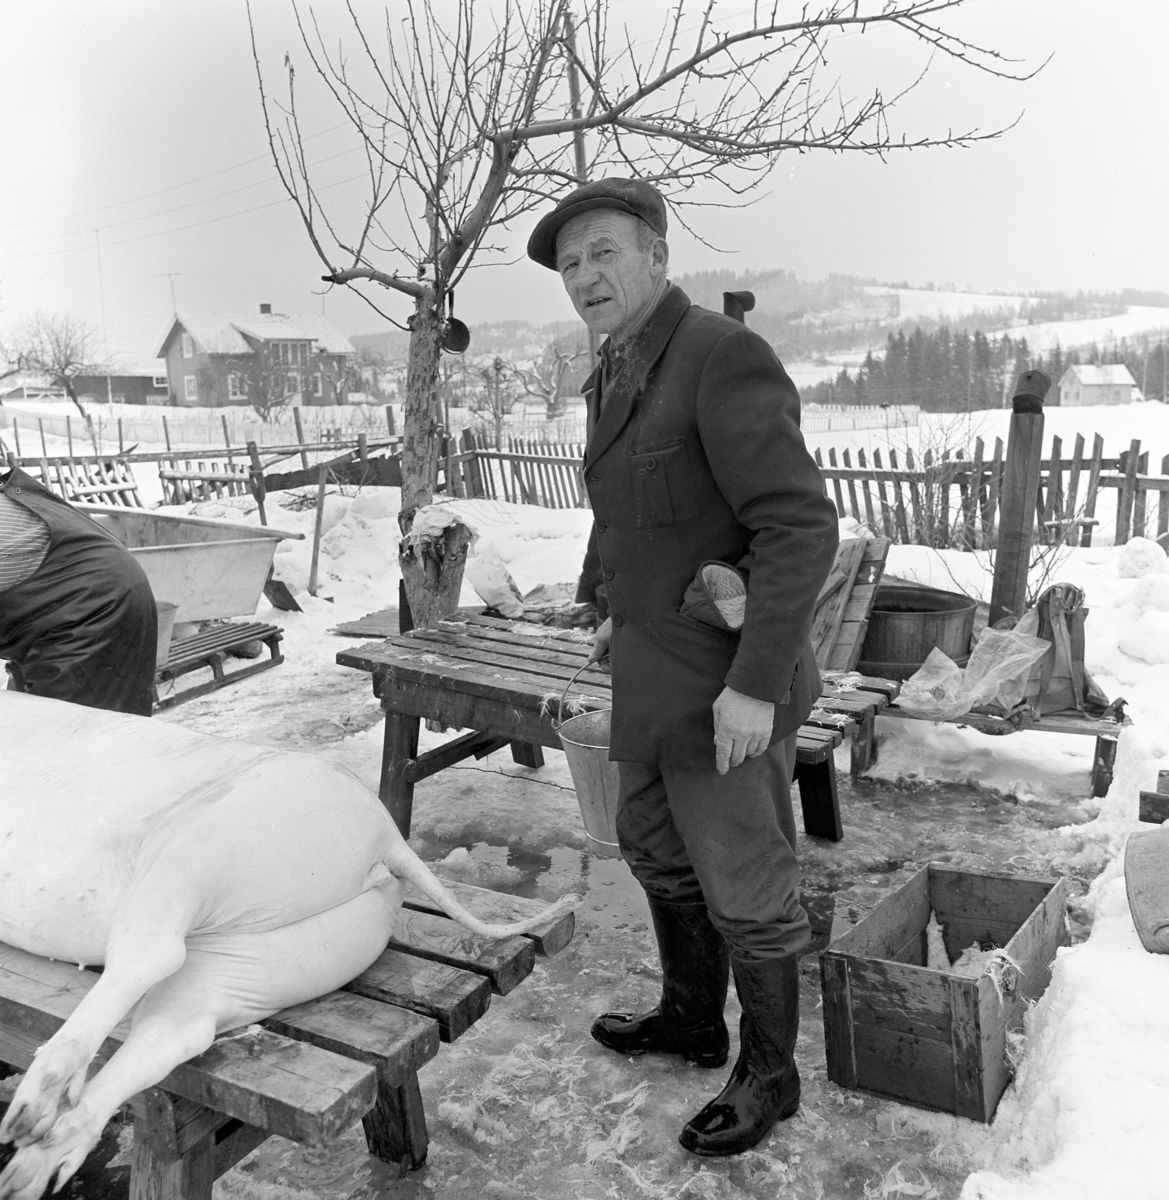 Dokumentasjon av griseslakting i 1977, på Lunde i Gaupen, Ringsaker. Bygdeslakter. Kaldt vann helles på for å kjøle ned grisen før oppdeling.